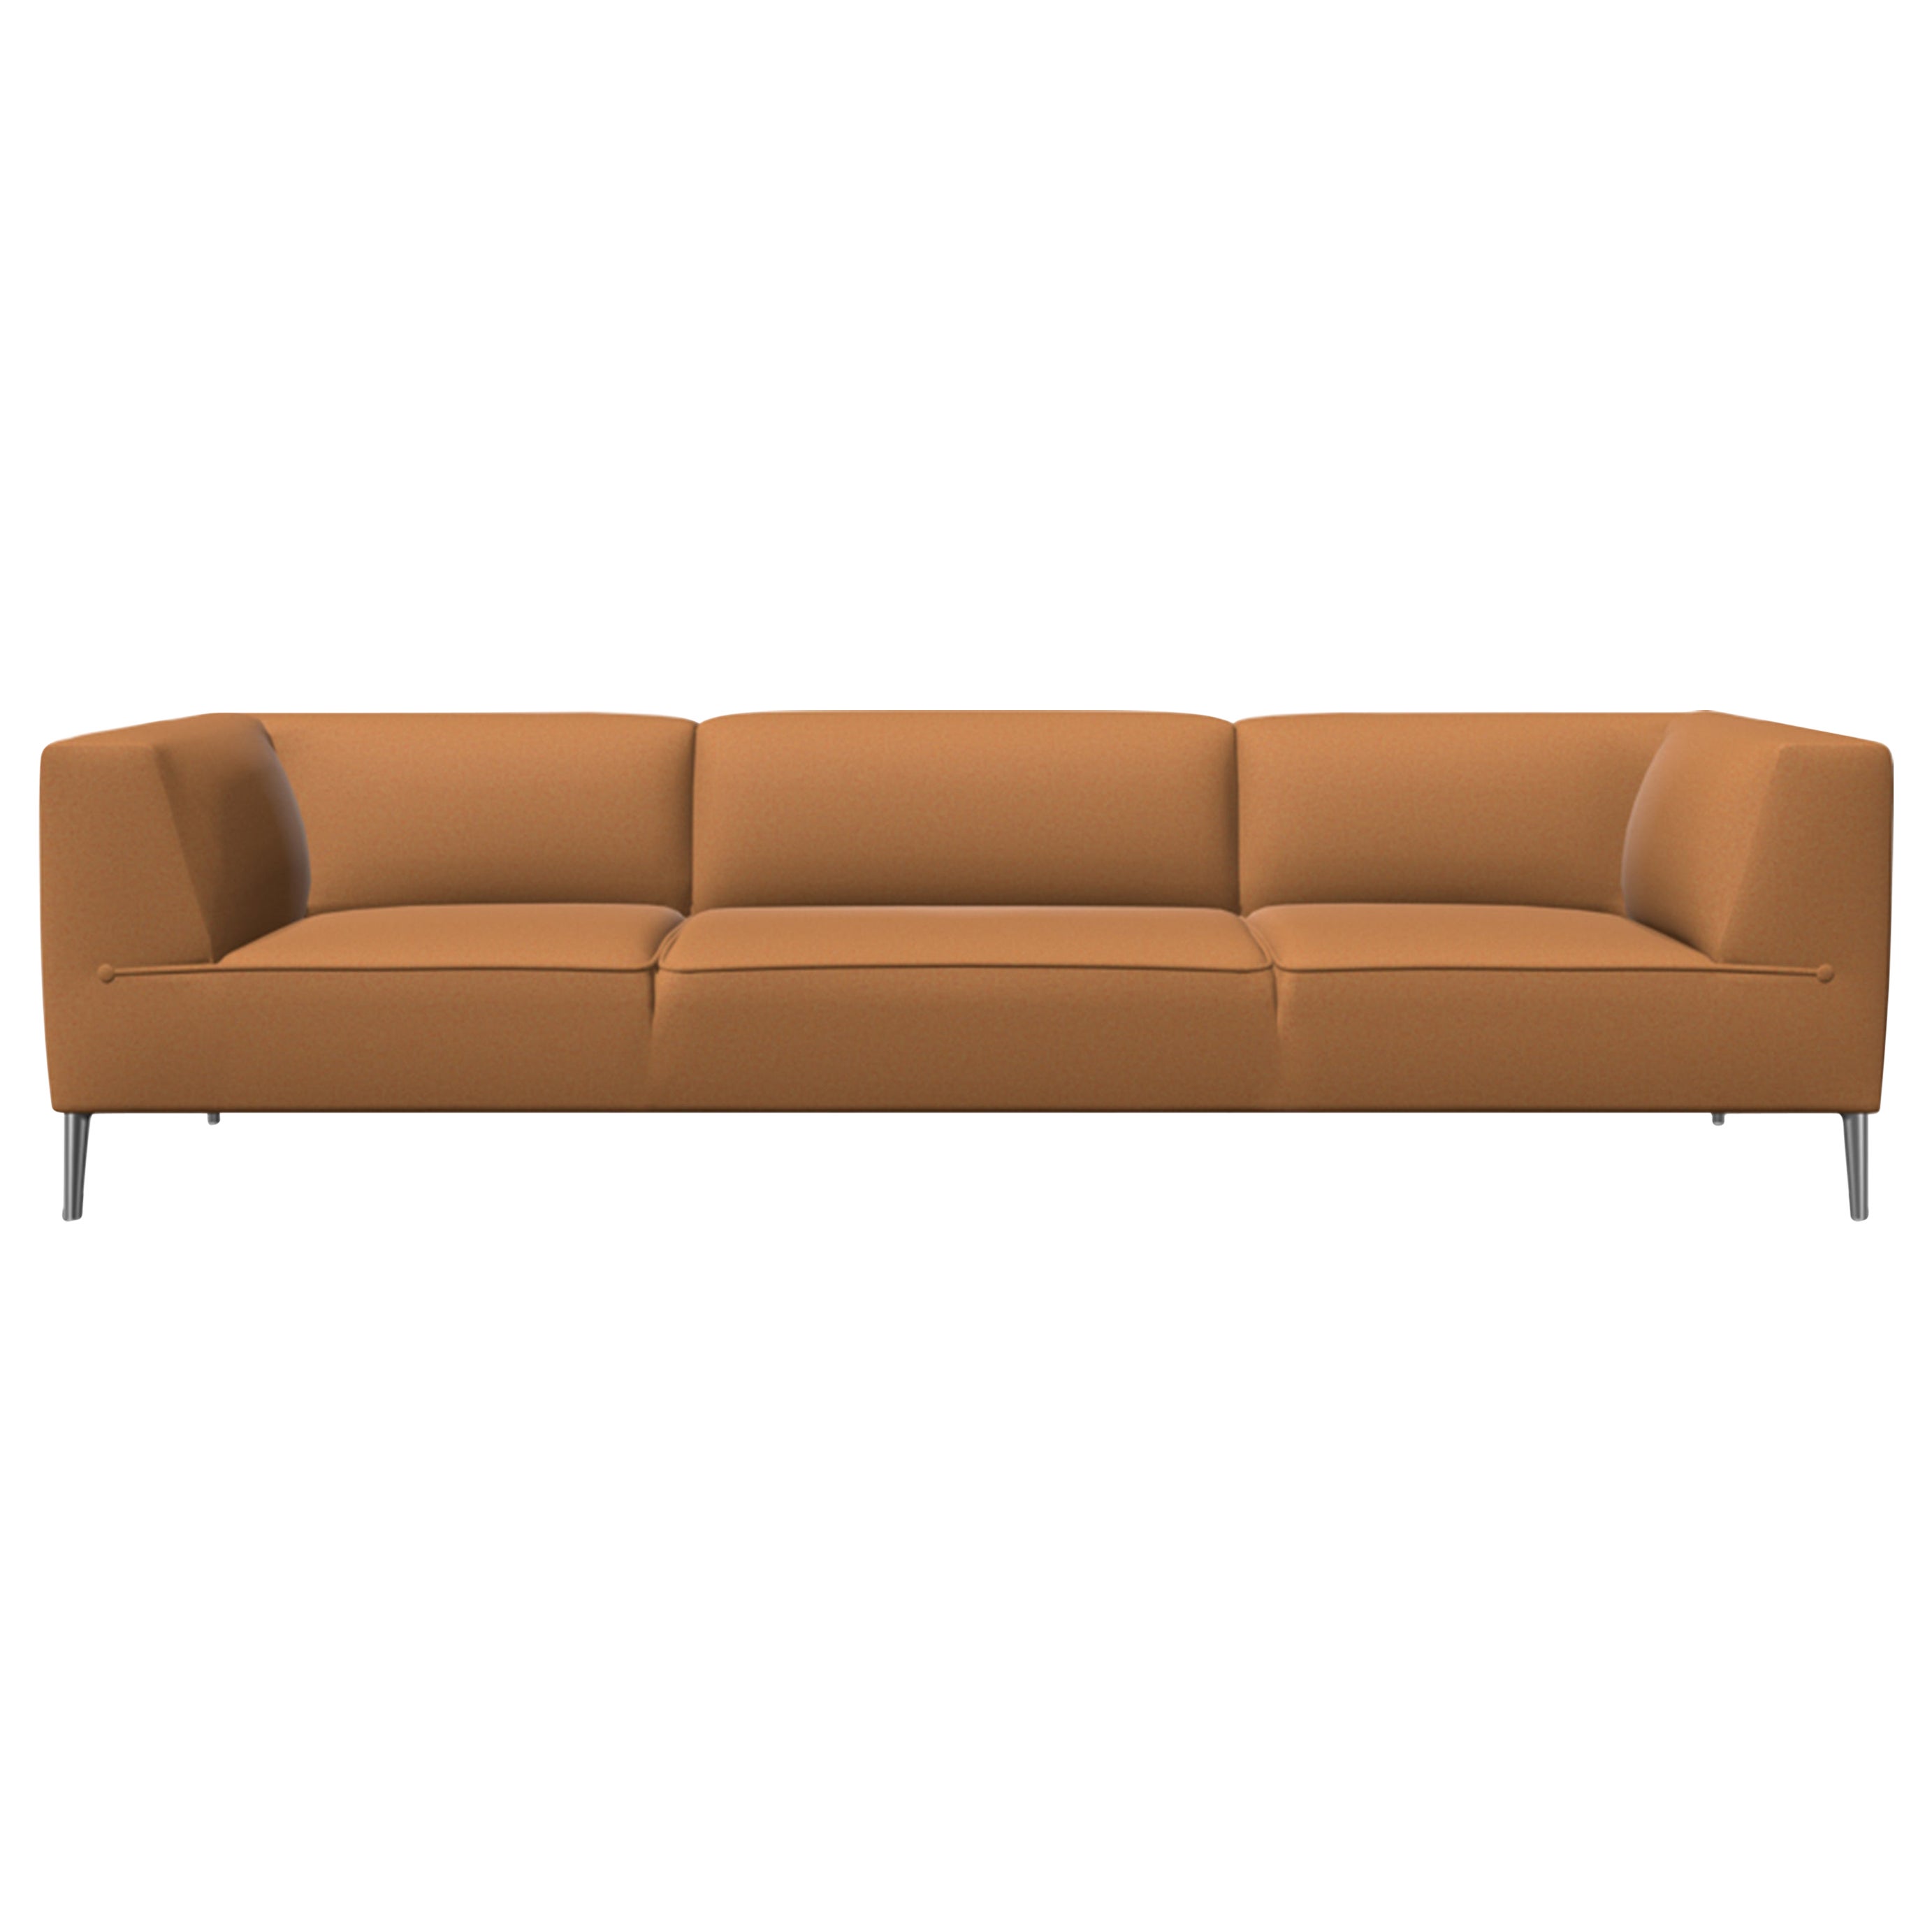 Moooi Dreisitziges Sofa So Good in Divina mit 3 Polsterungen und polierten Aluminiumfüßen